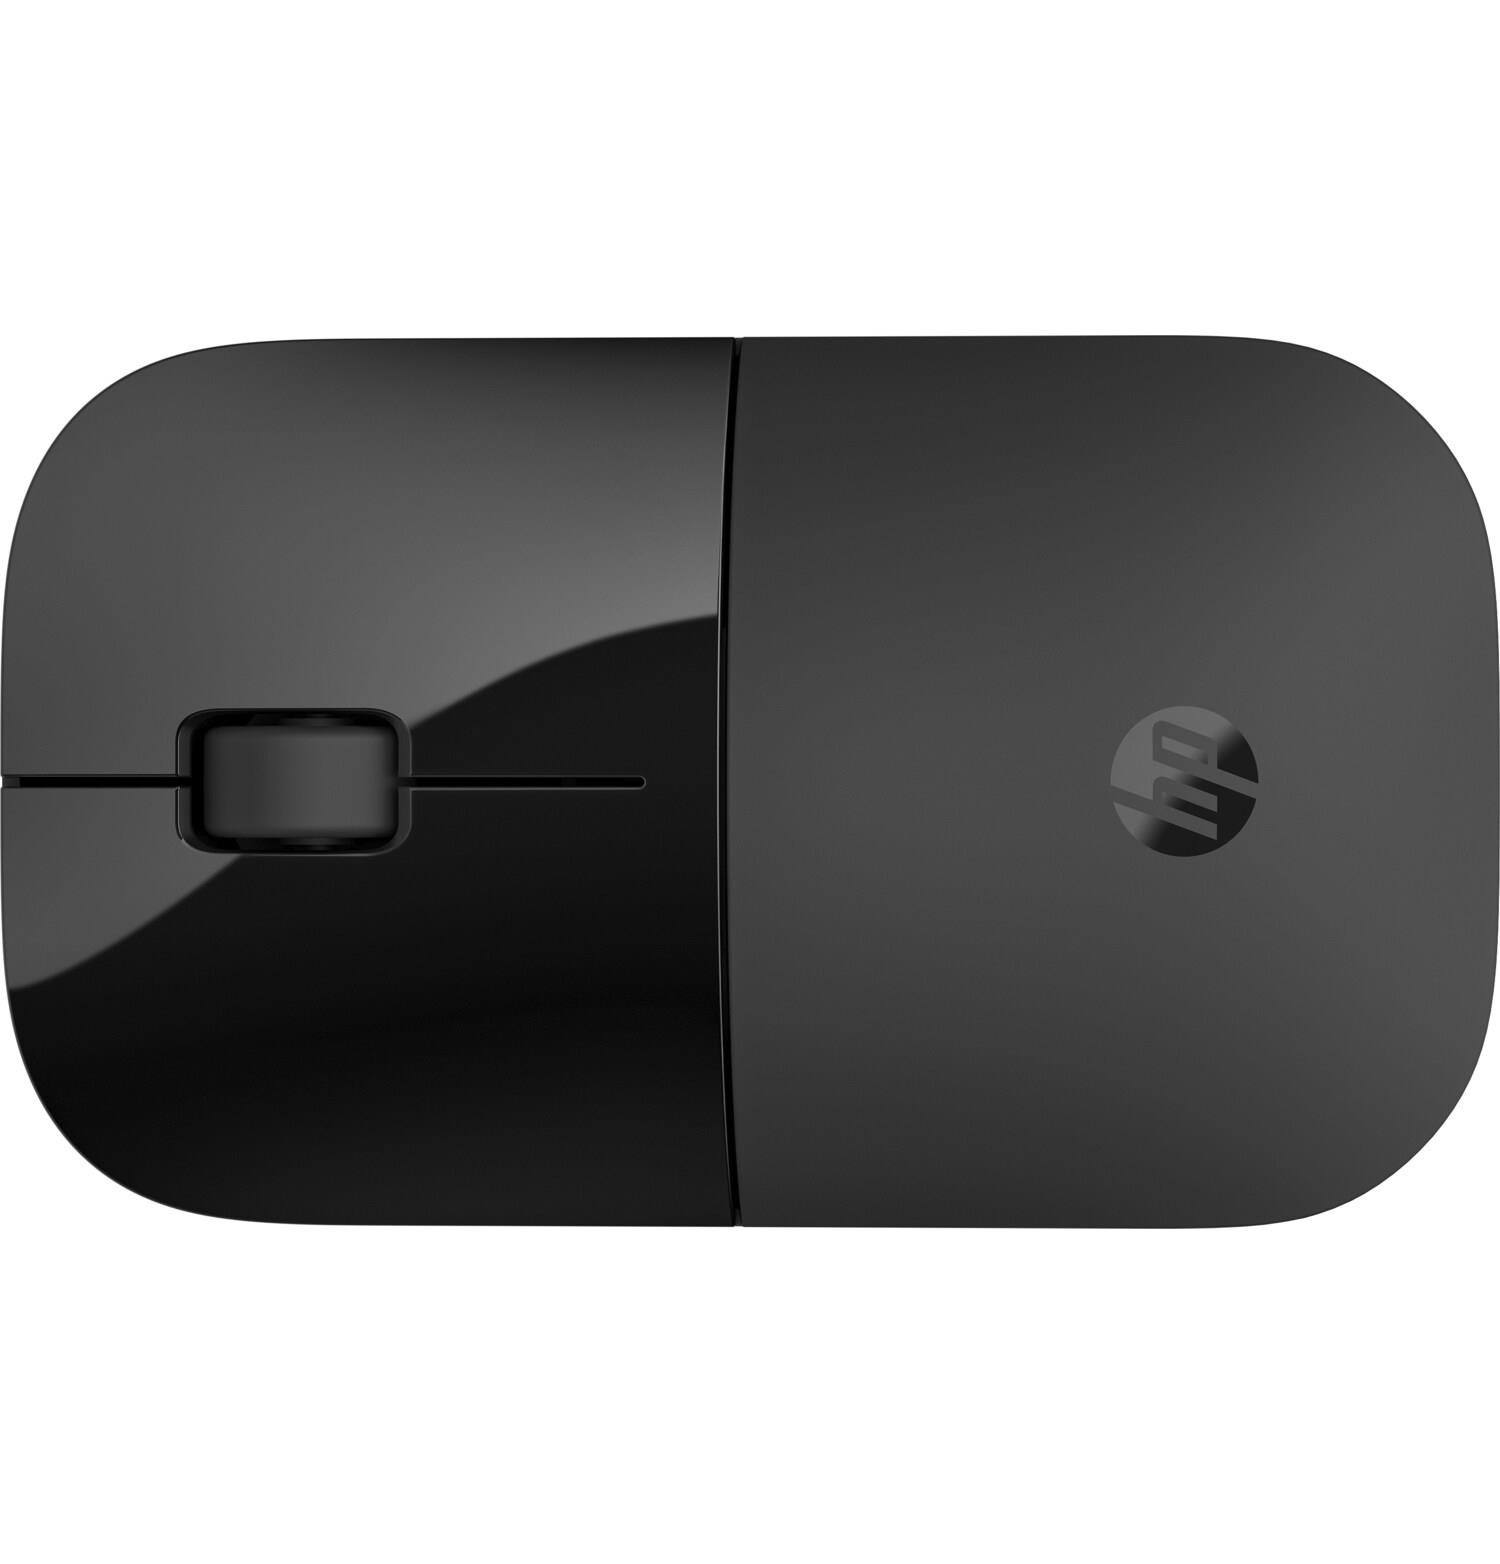 HP Z3700 Dual Black Wireless Mouse EURO - bezdrátová myš3 